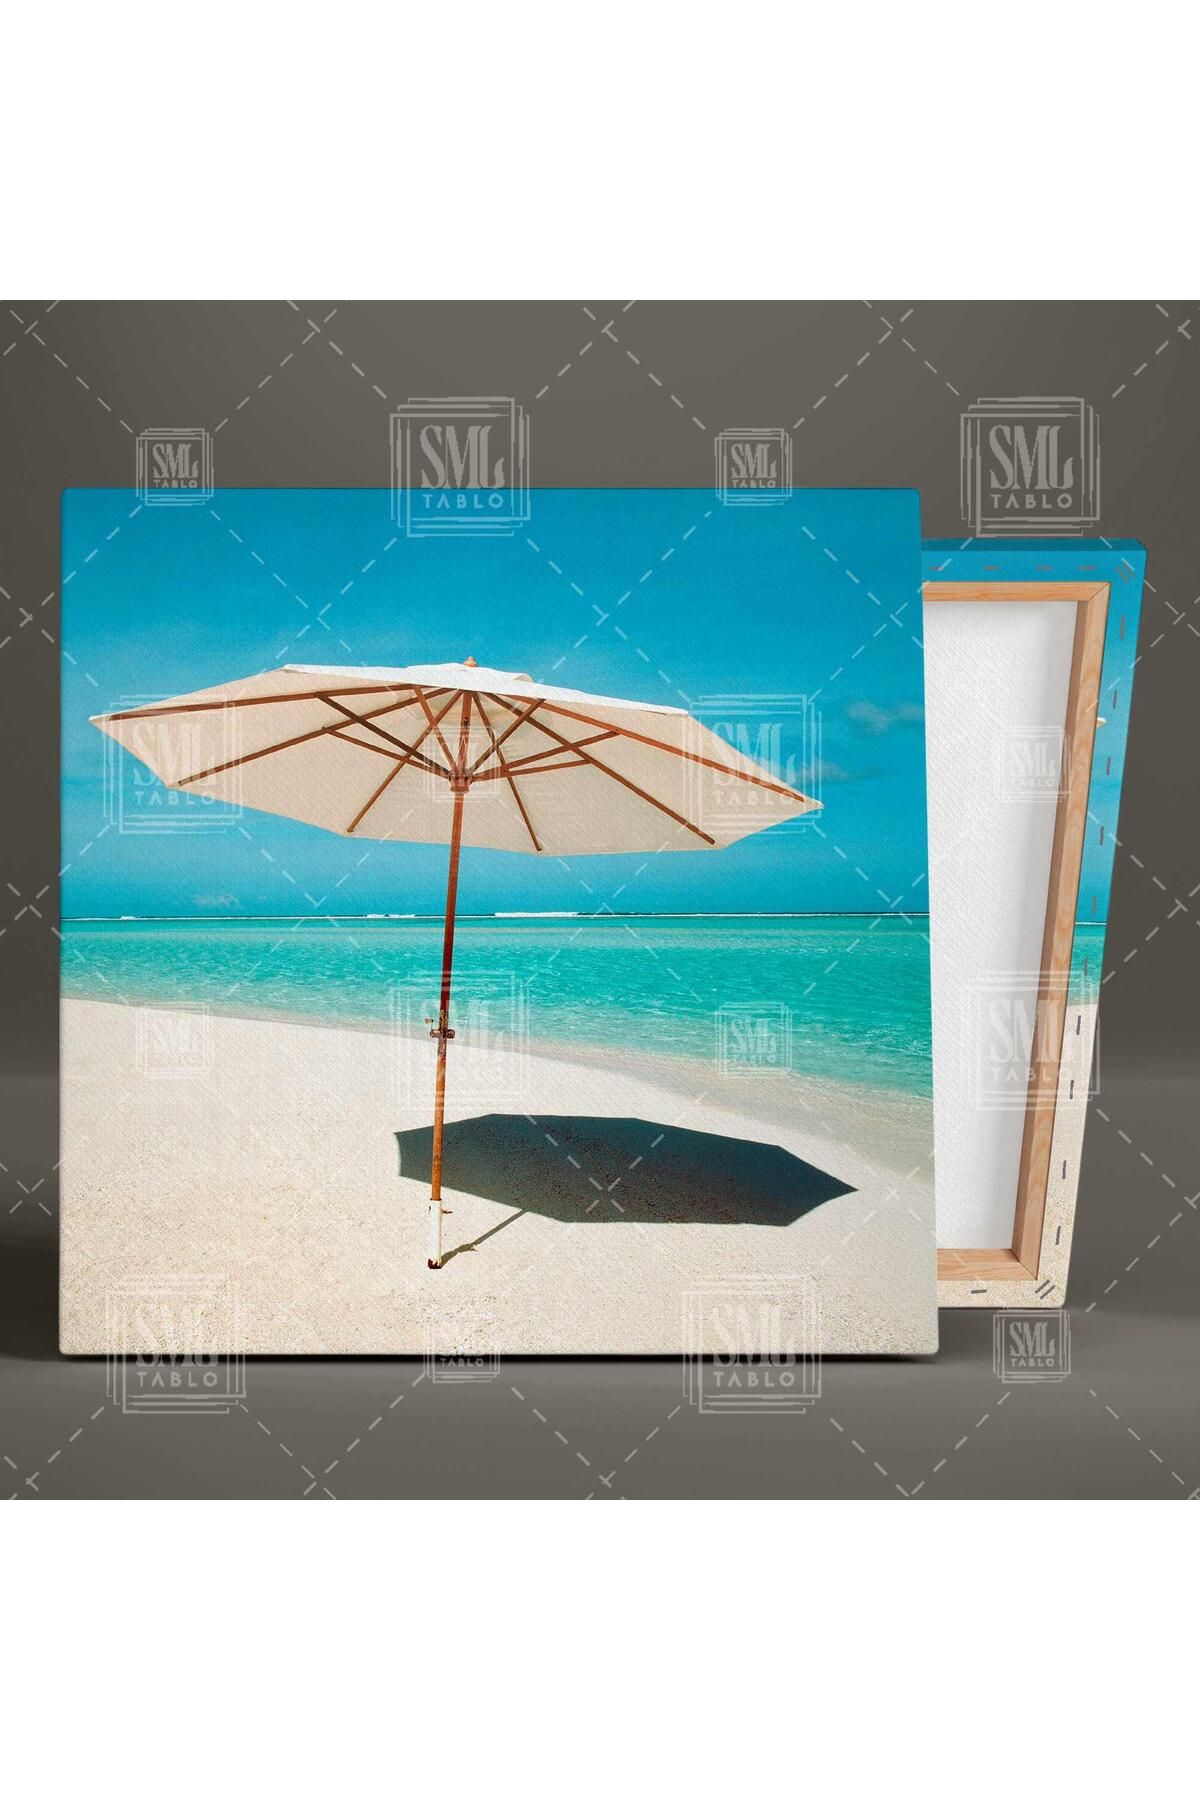 SML TABLO Sahilde Şemsiye Deniz Kum Güneş Şezlonk Kare Kanvas Tablo